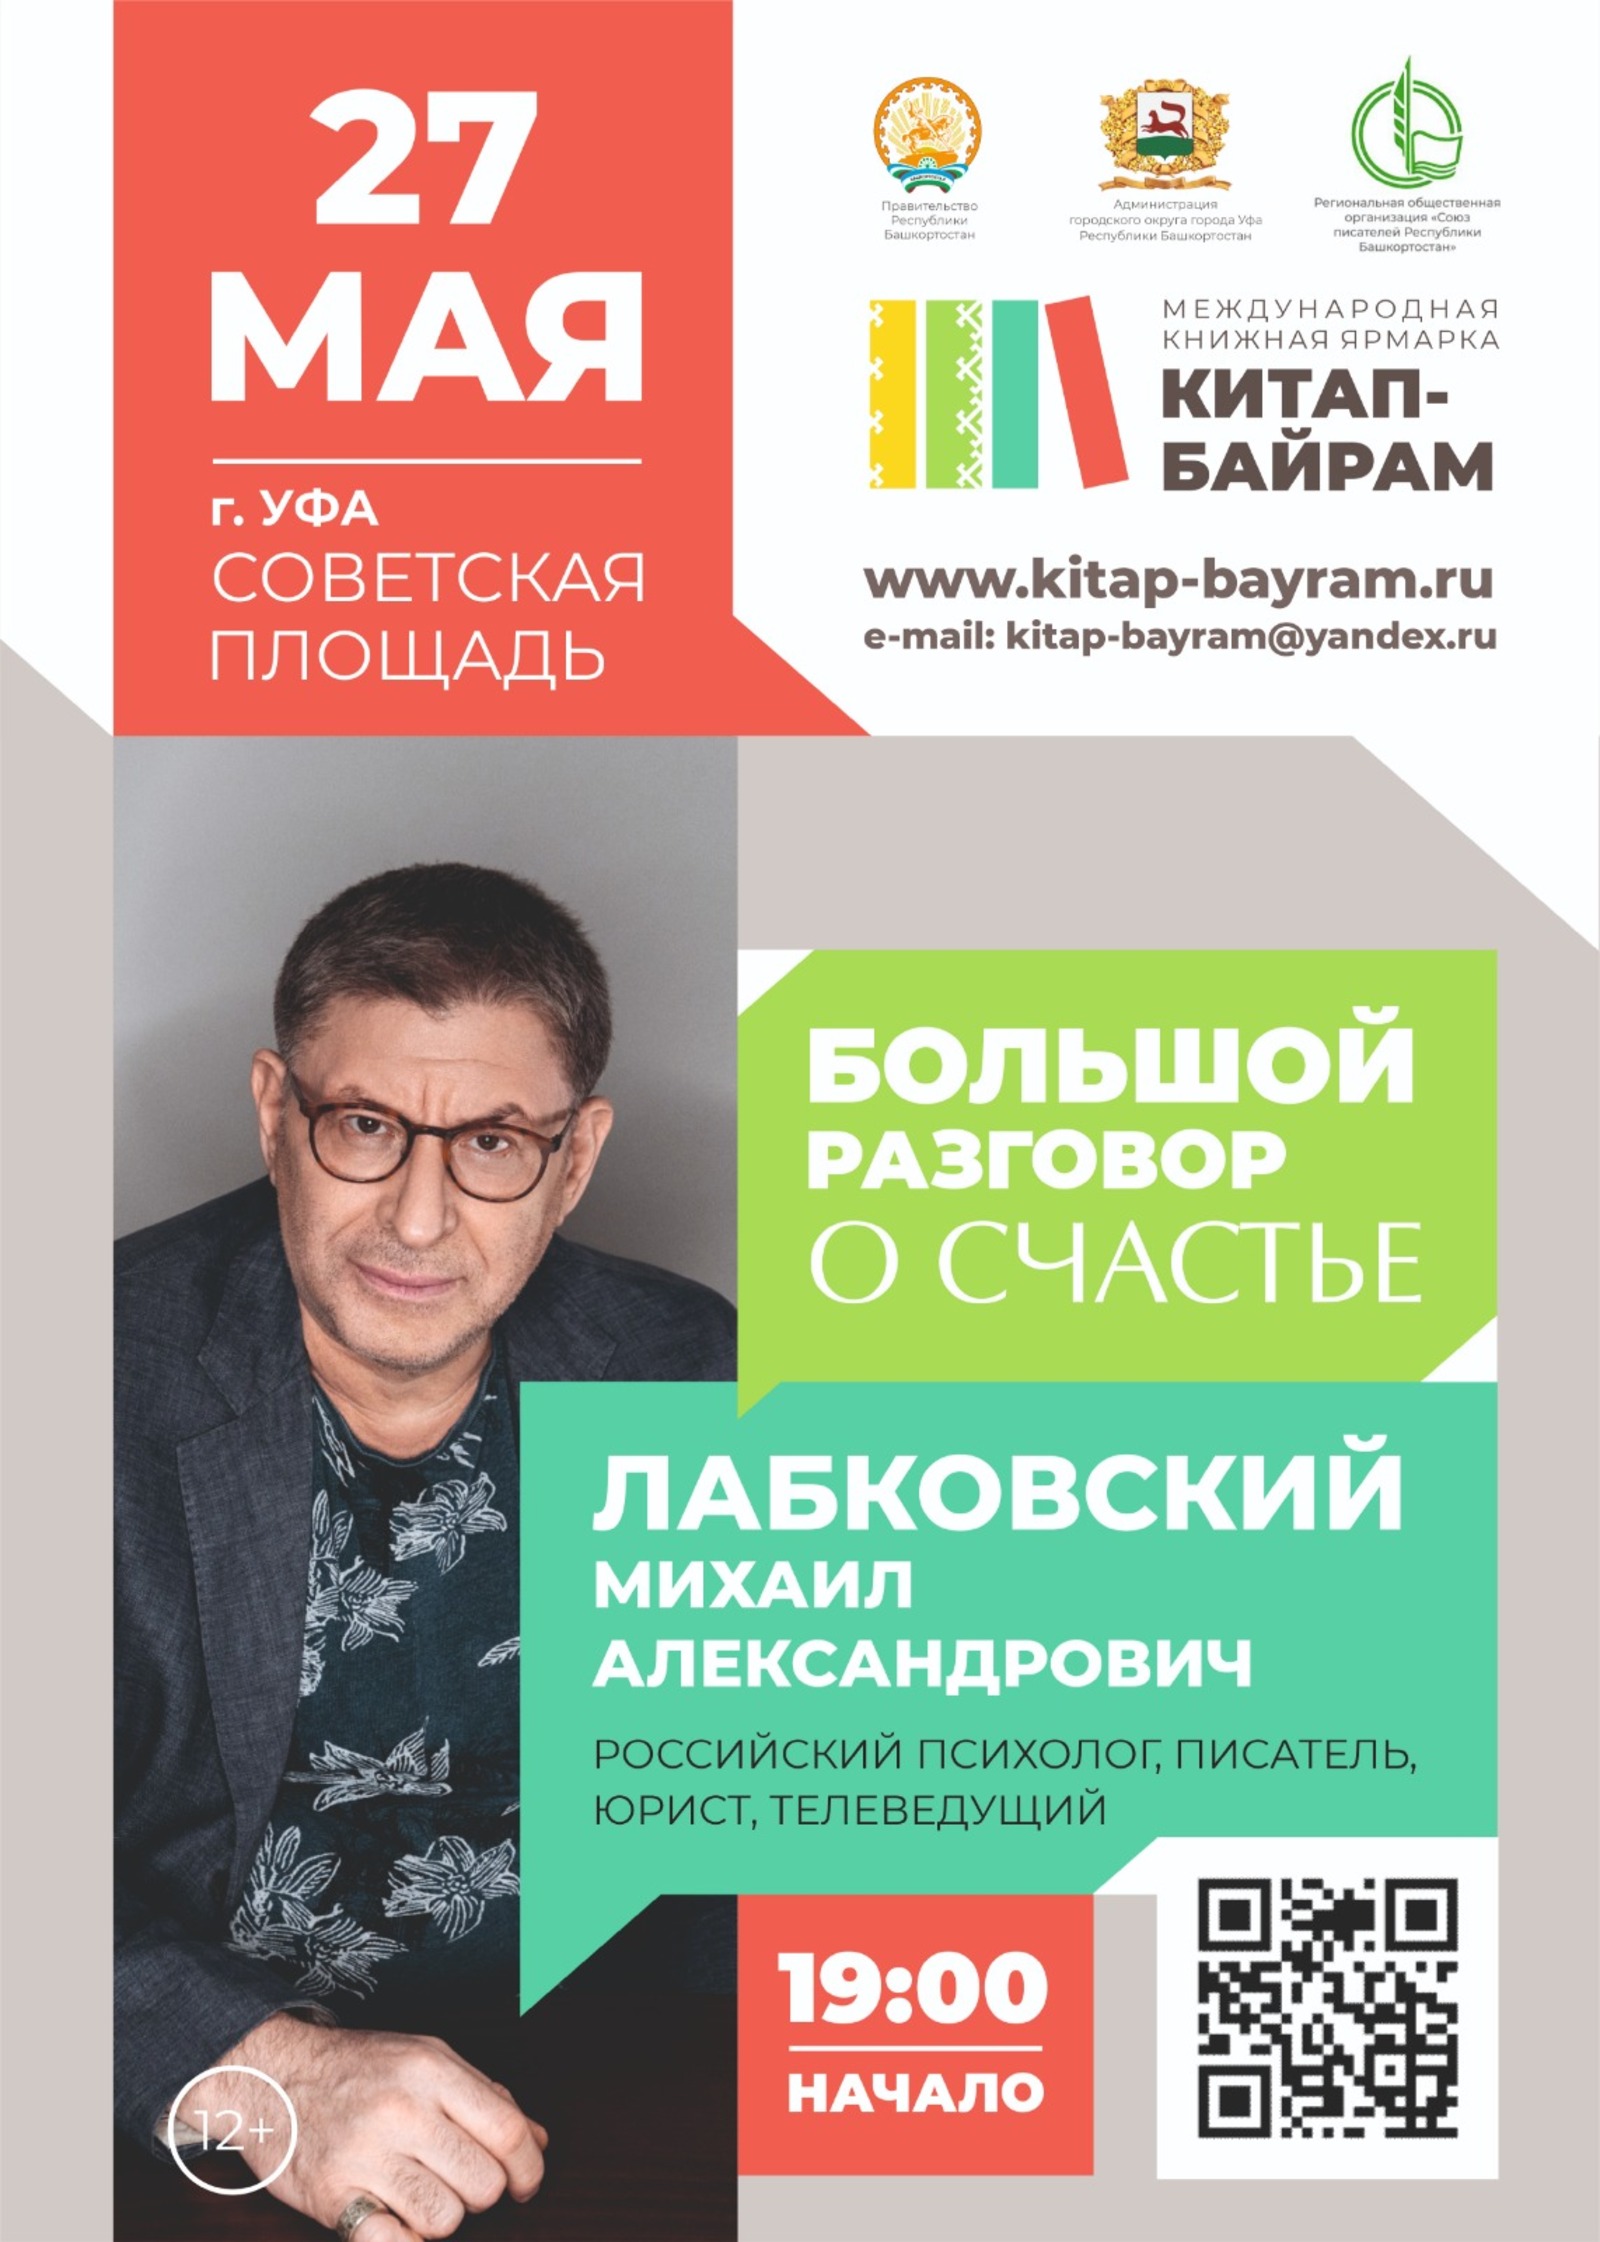 Книжная ярмарка «Китап-байрам» в Башкирии - что будет и чего ждать?